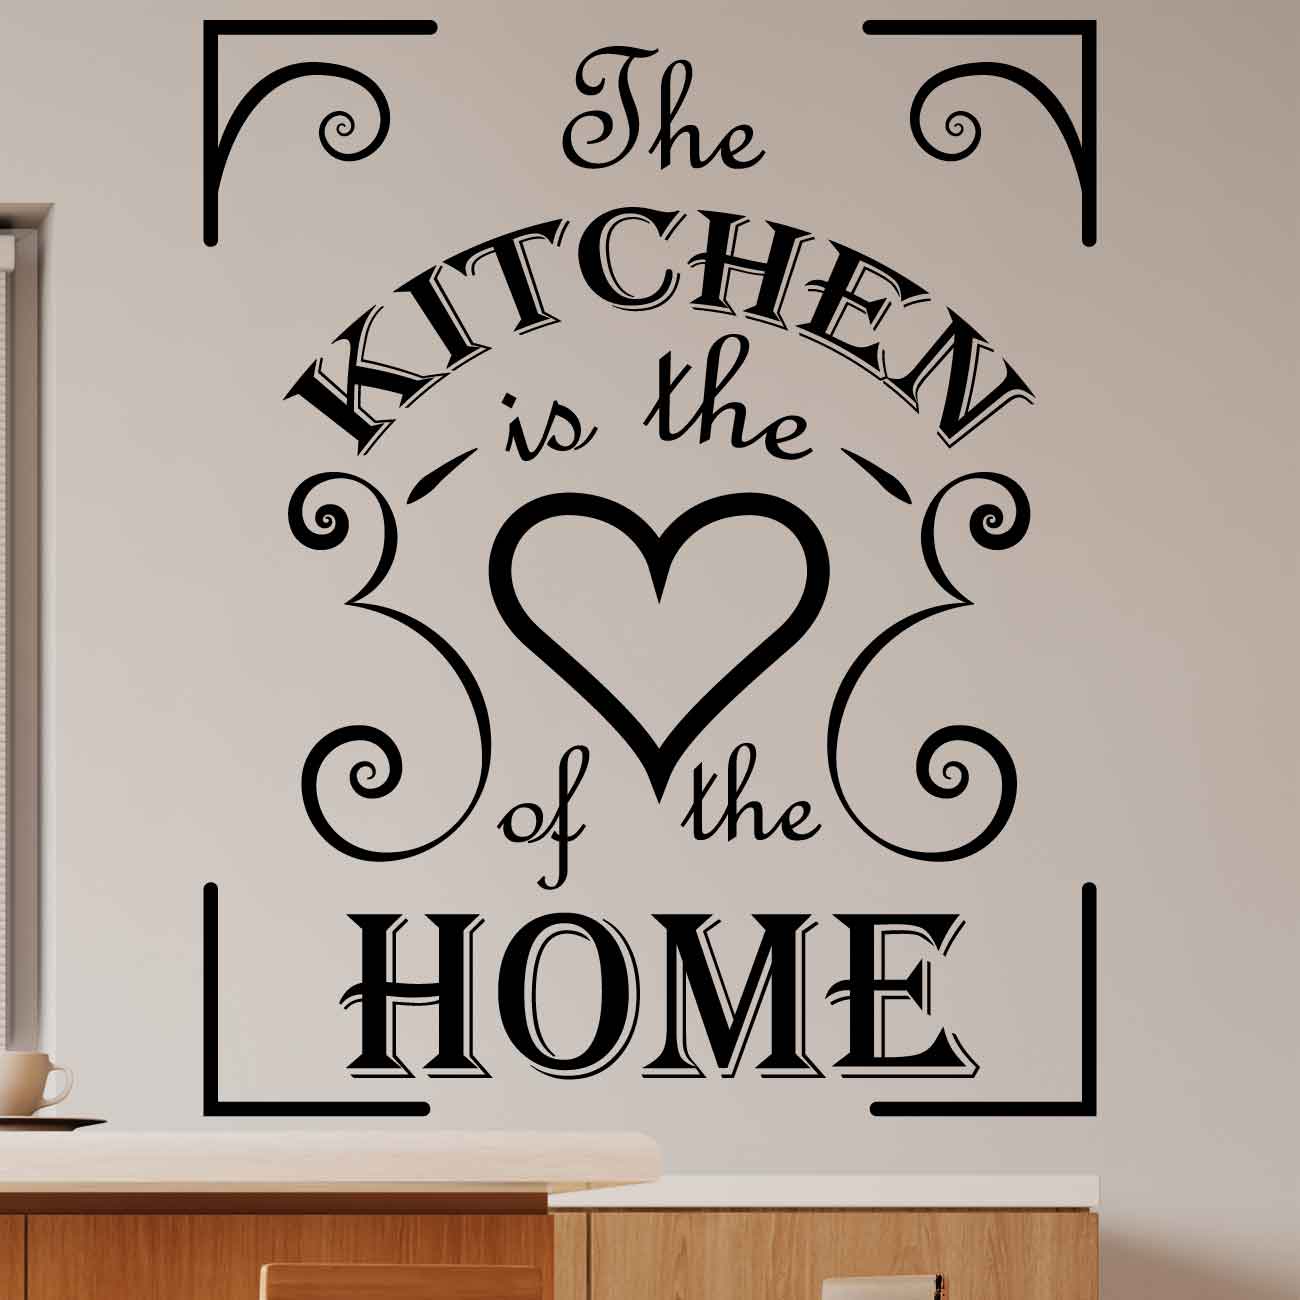 מדבקת קיר למטבח 1 The kitchen is the heart of the home